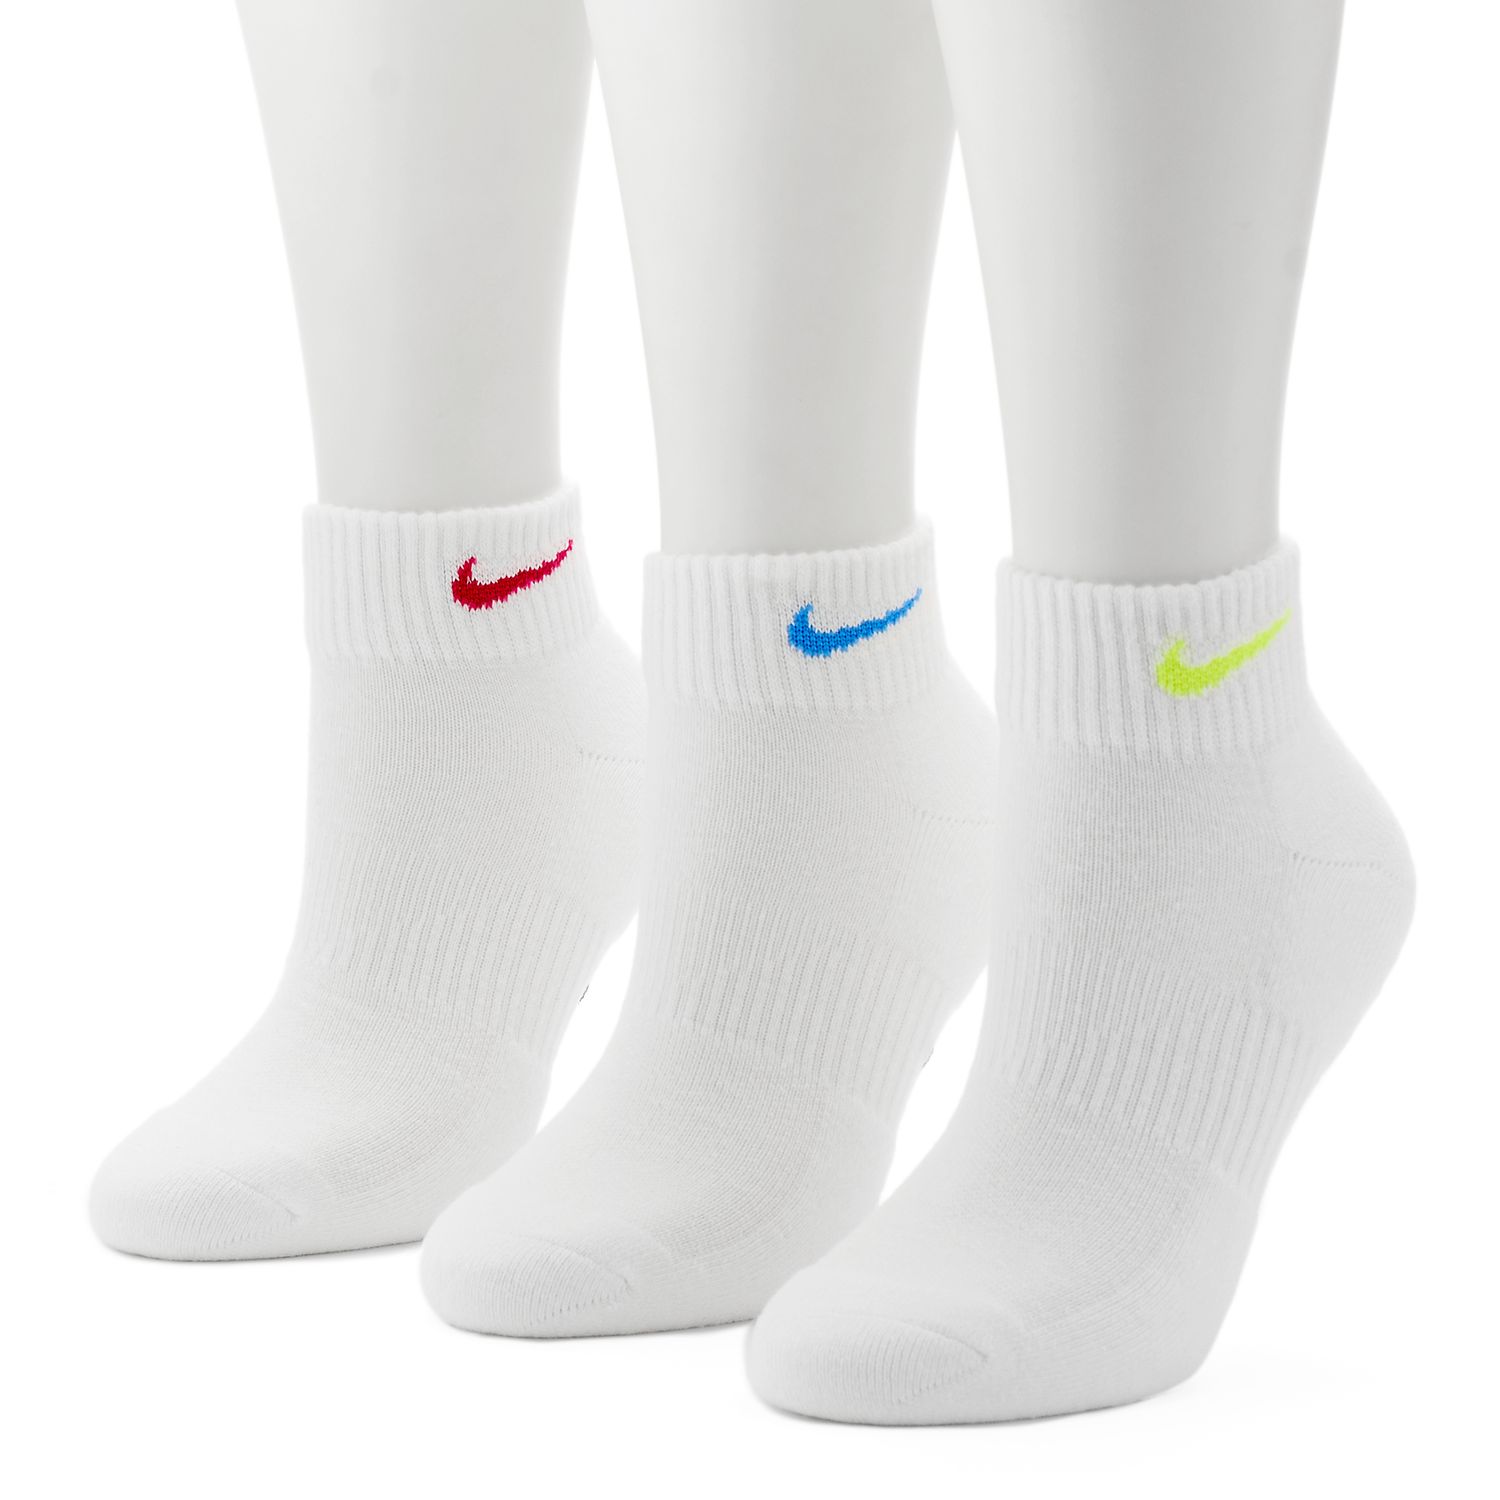 women's nike socks white